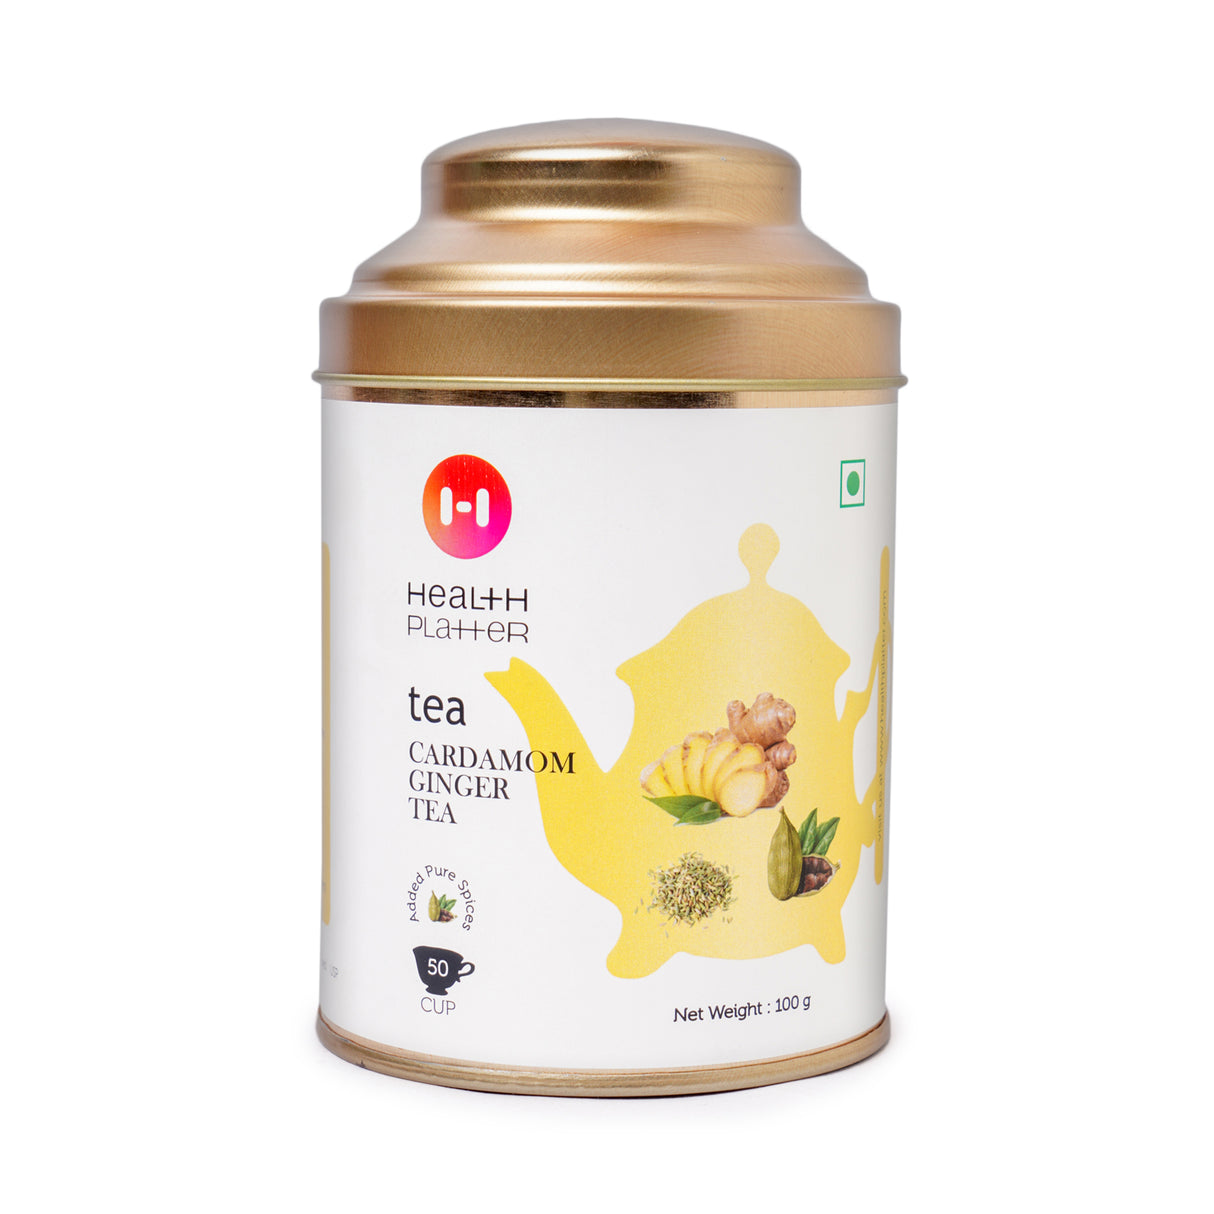 Health Platter Cardamom Ginger Tea